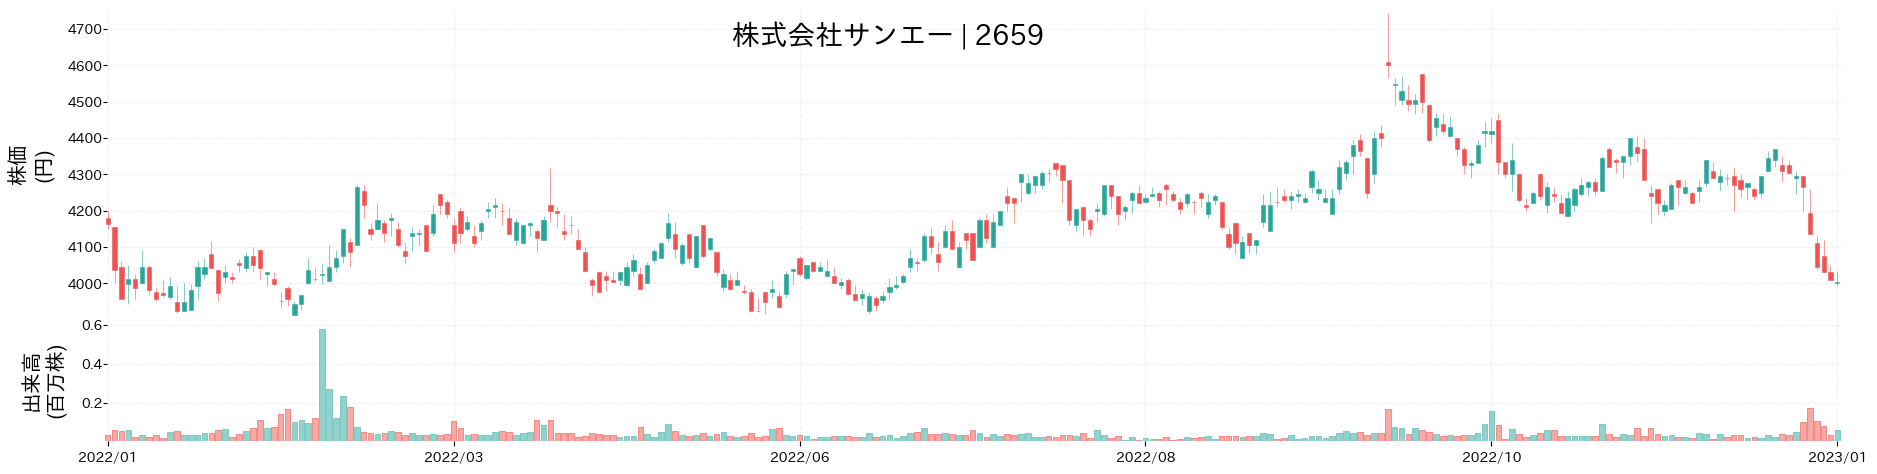 サンエーの株価推移(2022)